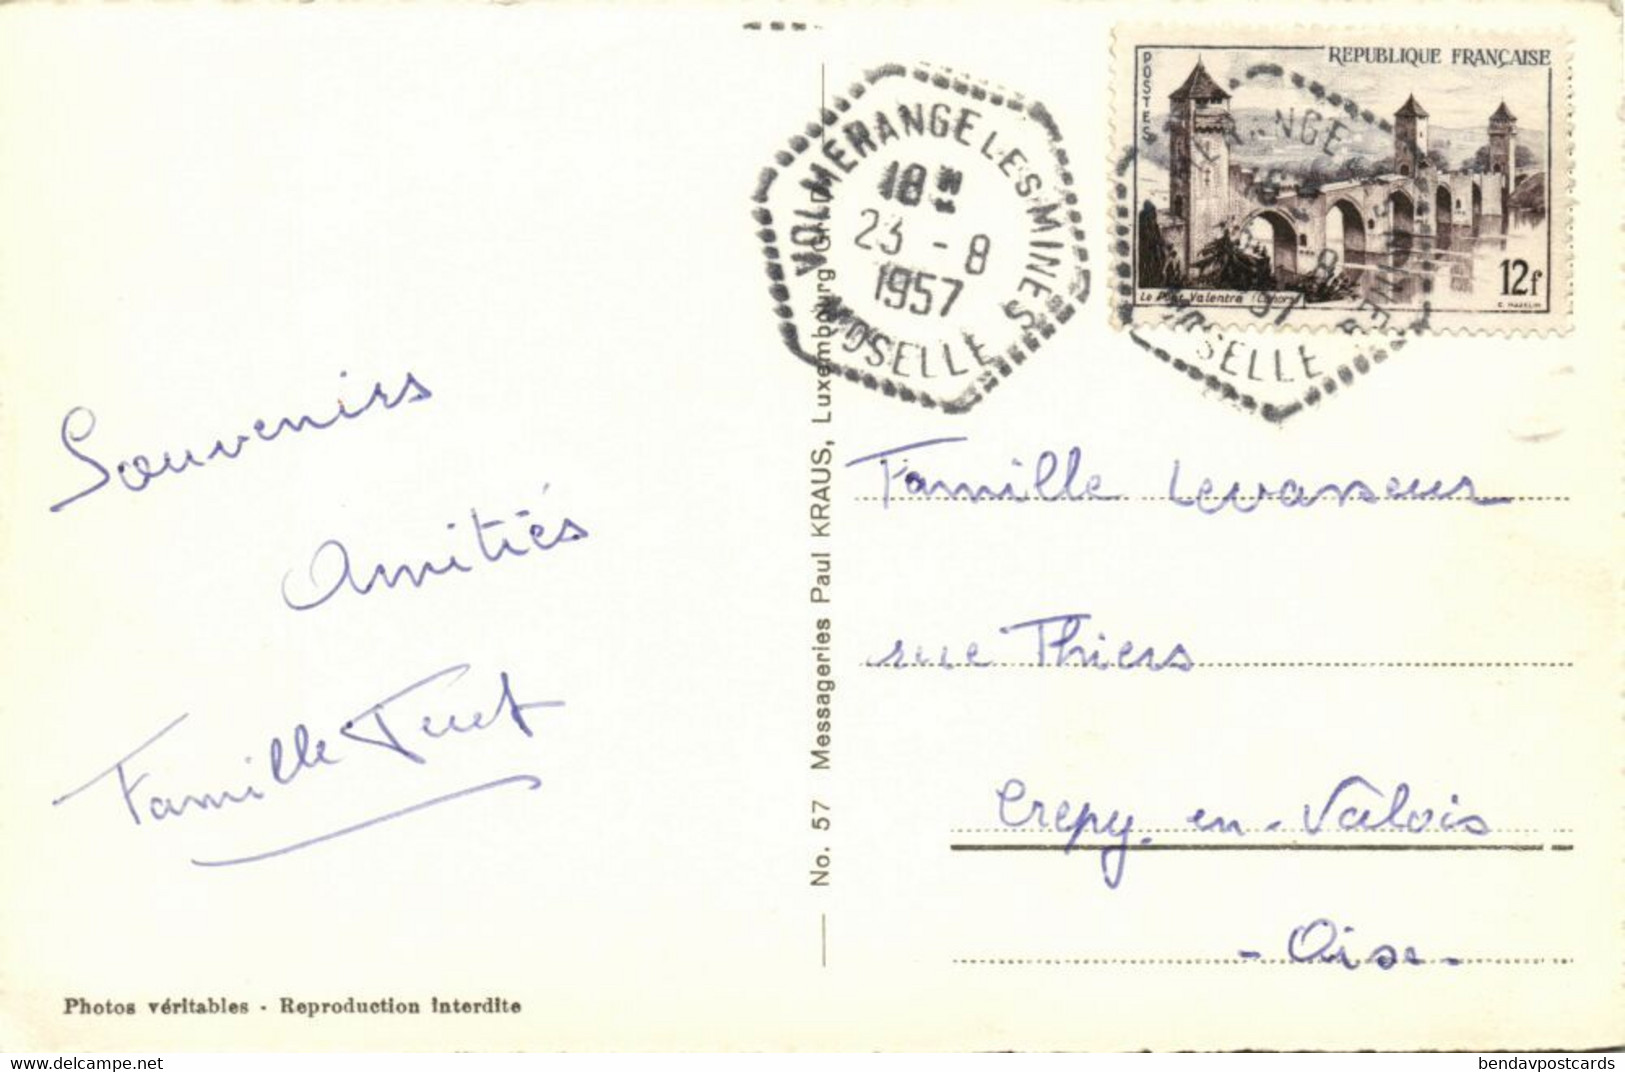 Luxemburg, DUDELANGE, Tele-Luxembourg Station D'émission (1957) RPPC Postcard - Düdelingen